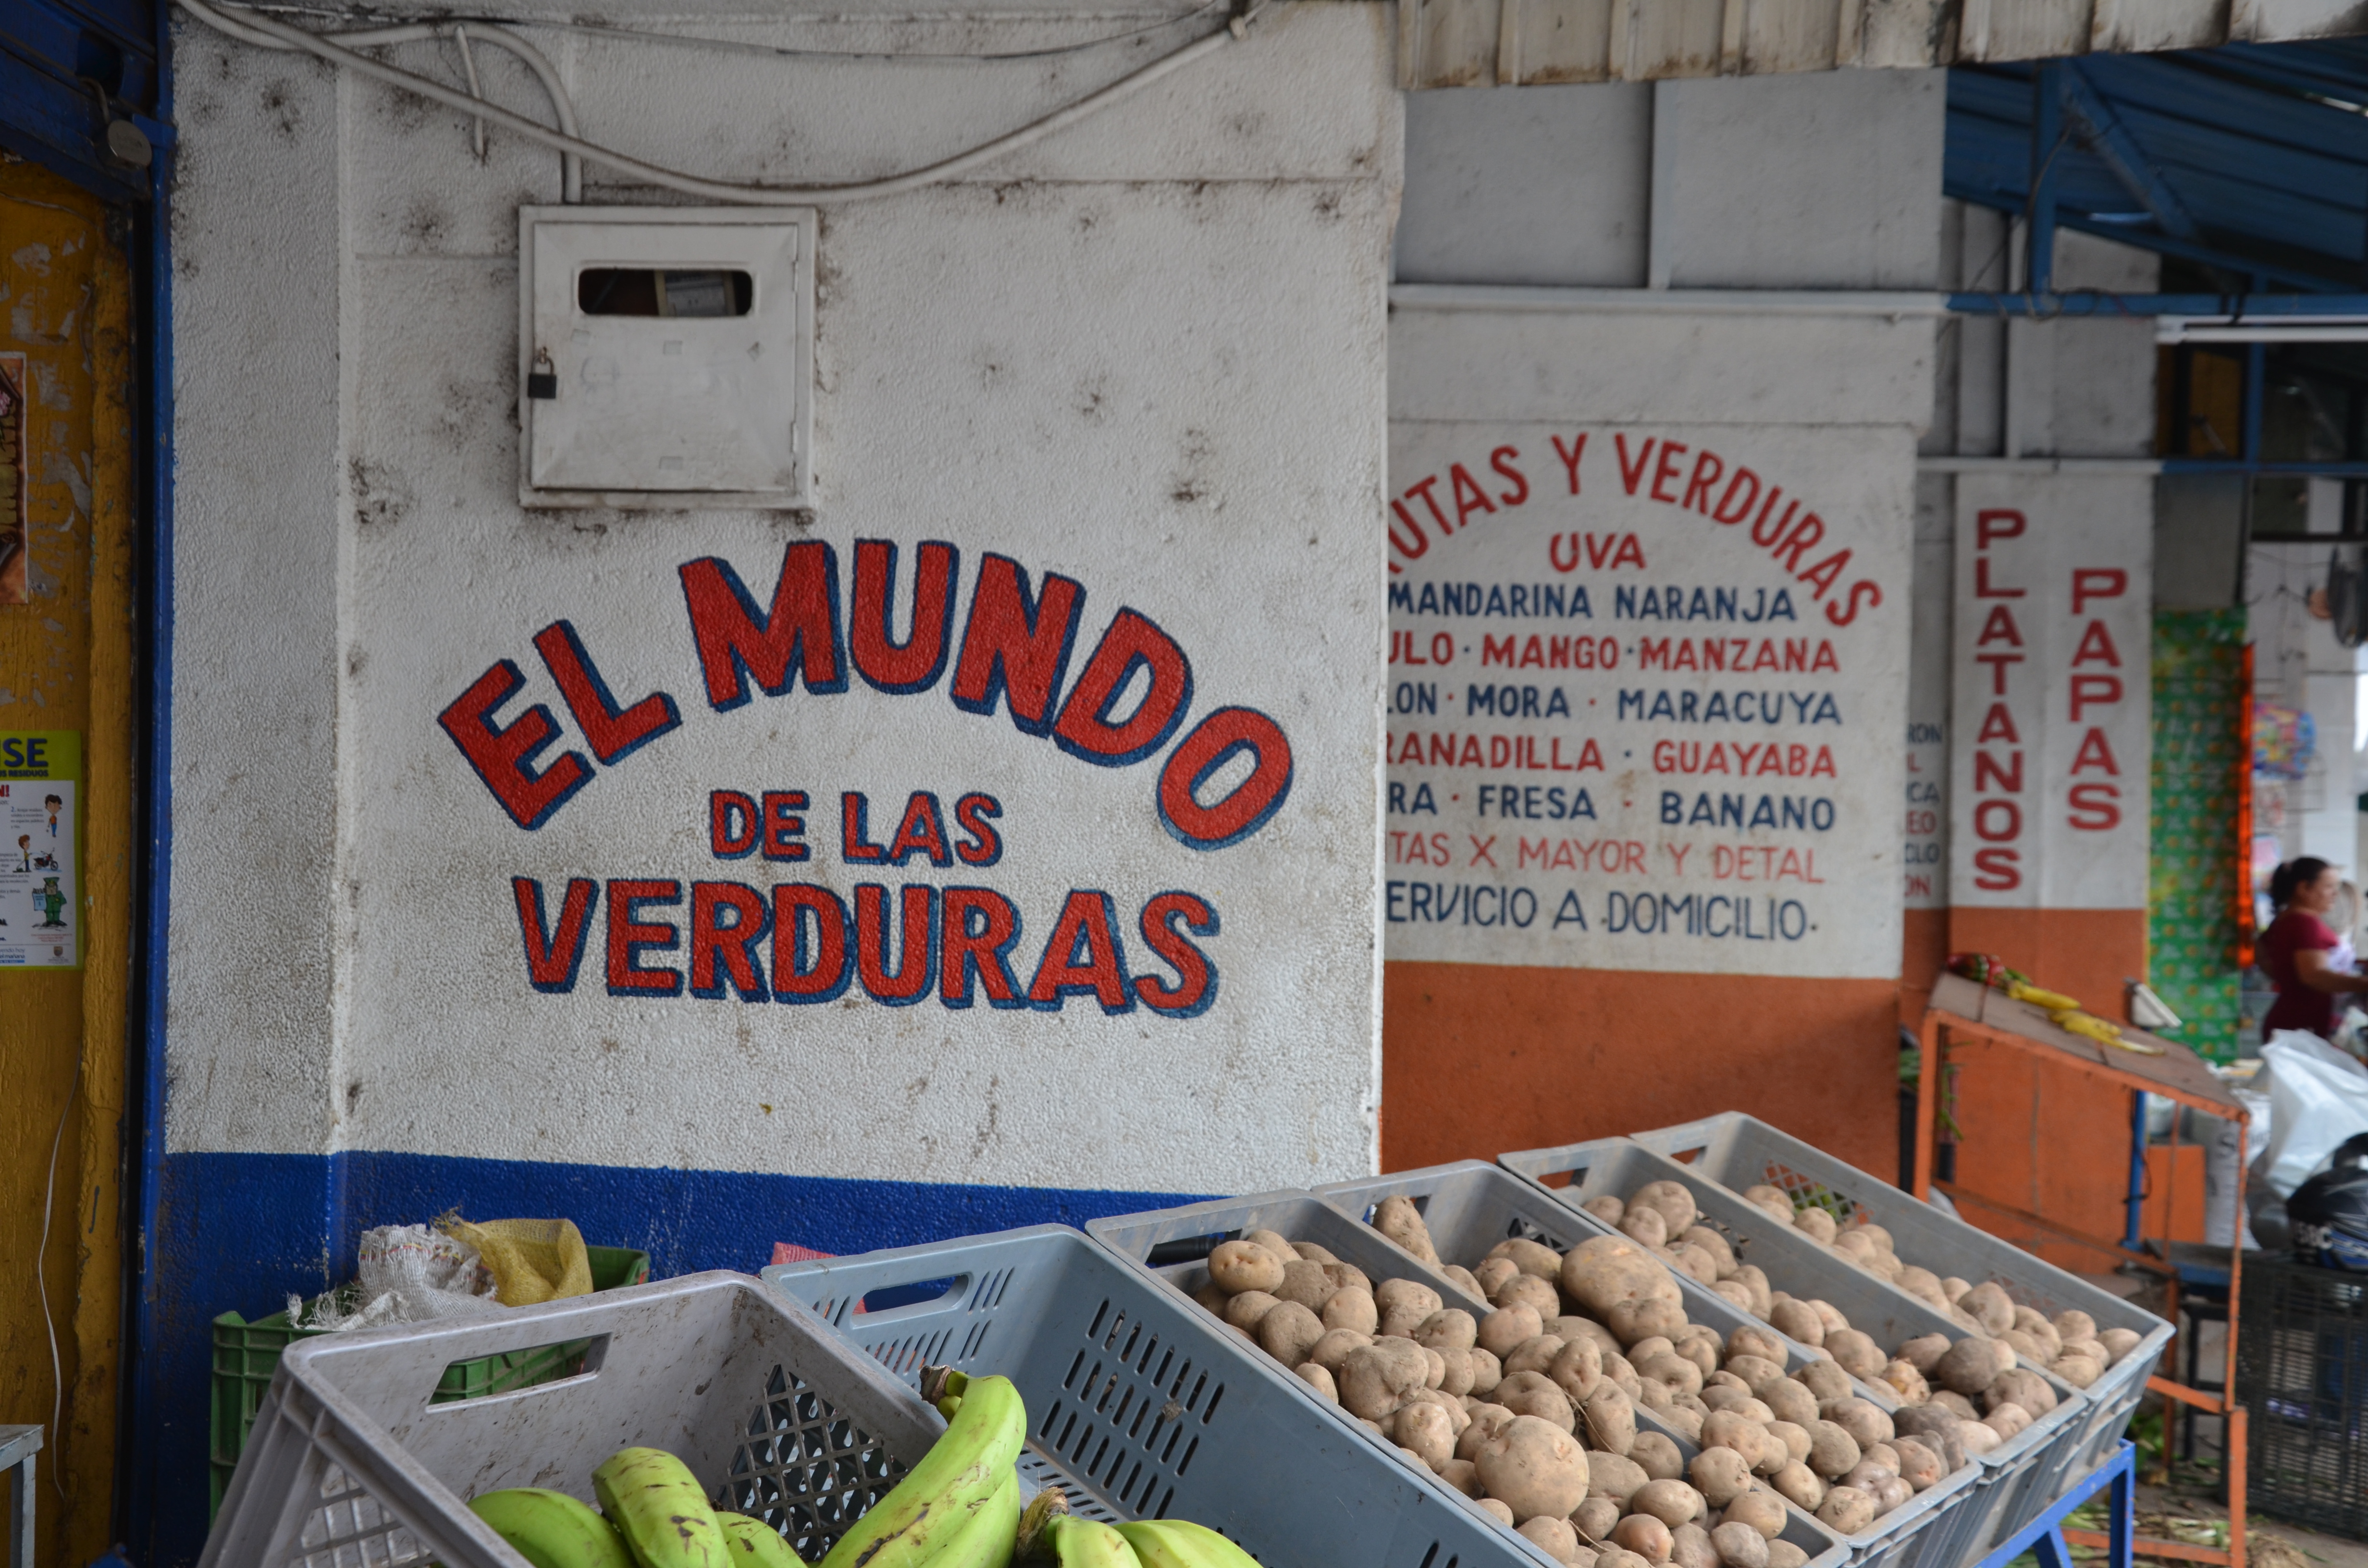 El Mundo de las Verduras (The World of Vegetables), Cali, Colombia. Photo by Melissa Reichwage/CIAT.